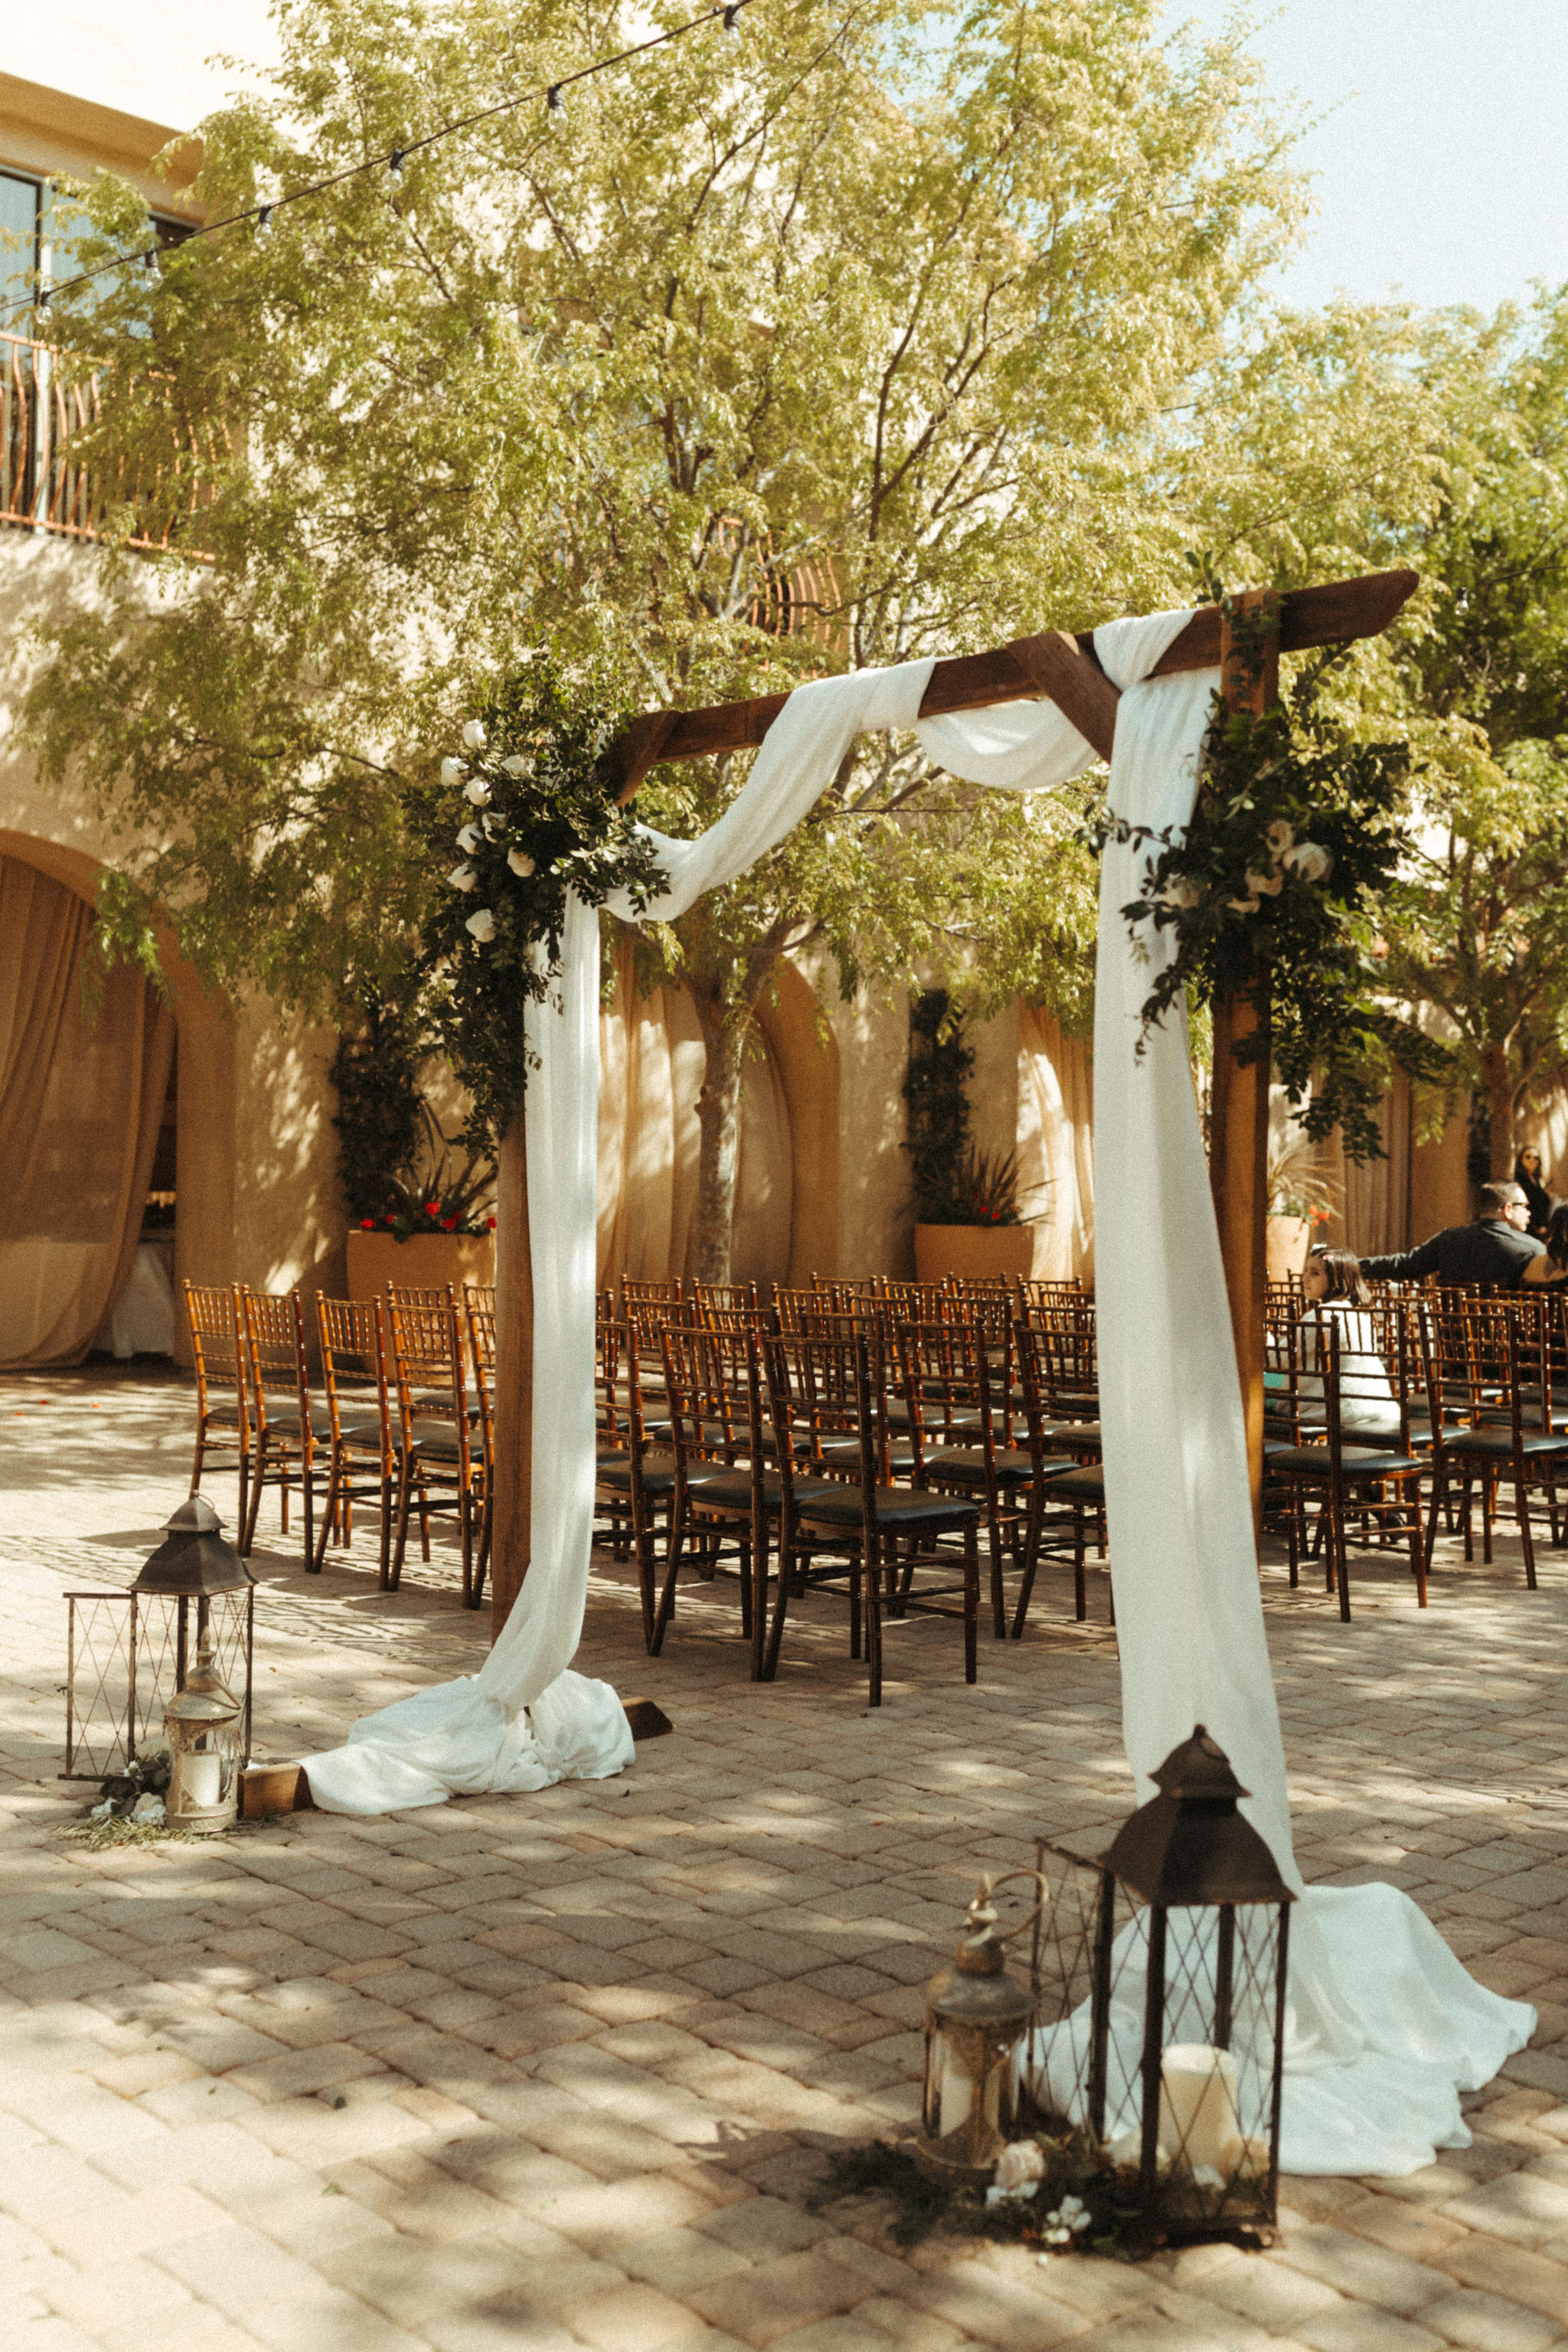 Romantic Neutral Wedding Colors at Serra Plaza – laurenmihae.com